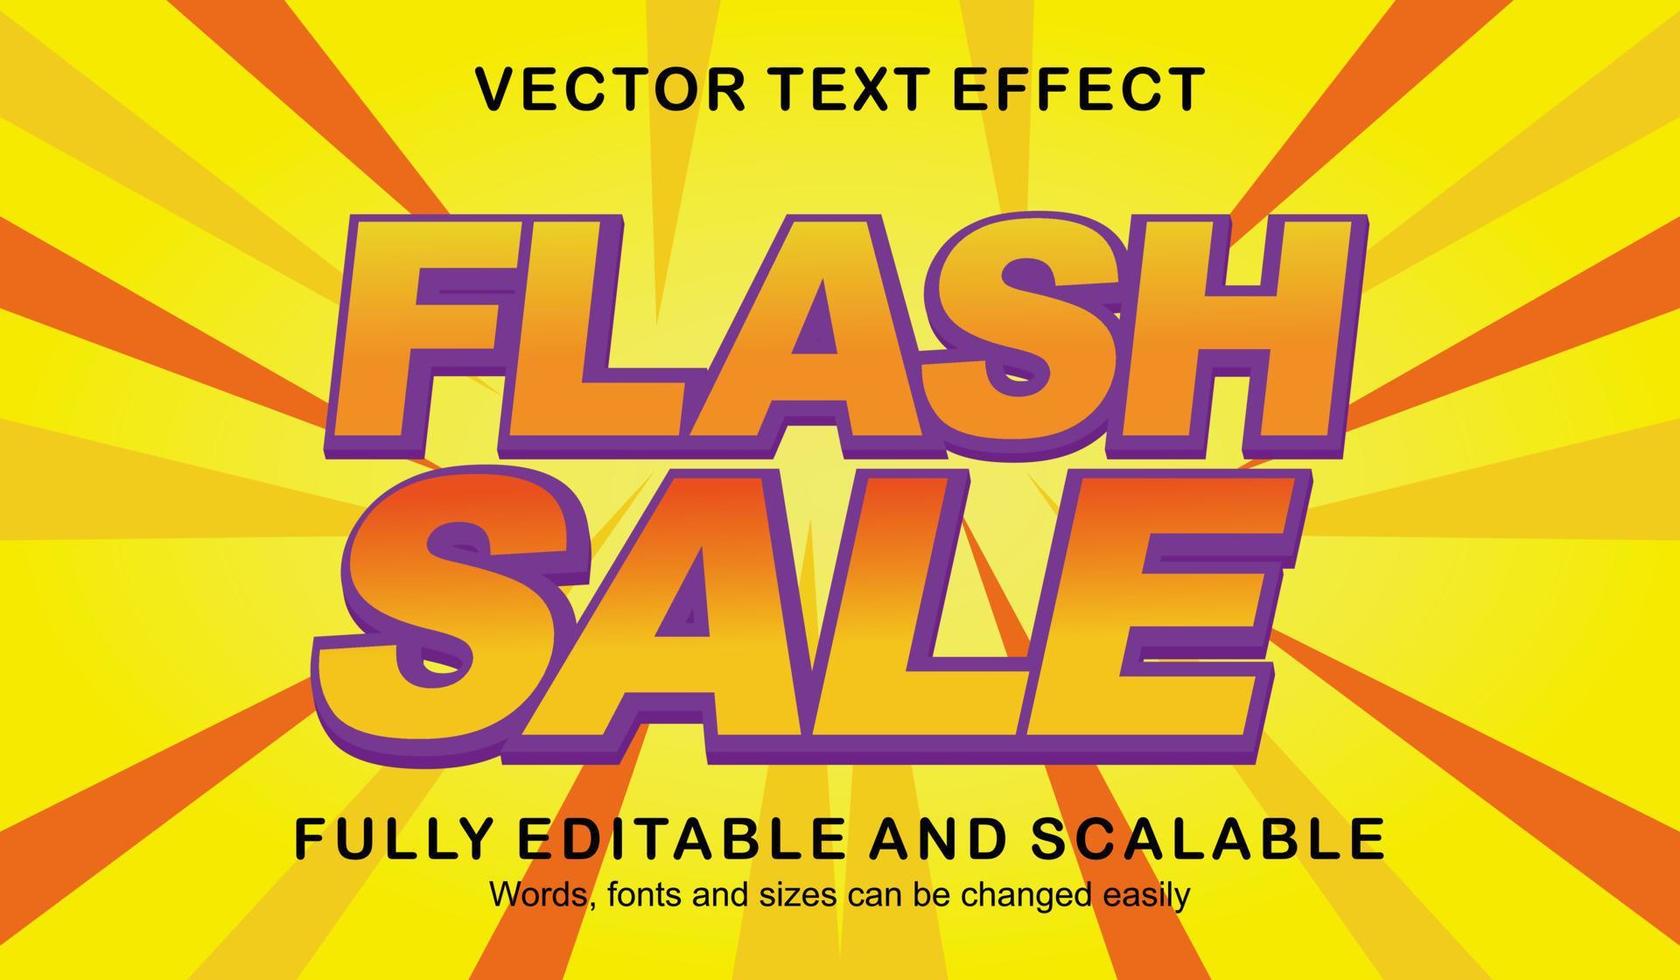 vetor de estilo de texto de venda em flash de efeito de texto editável premium